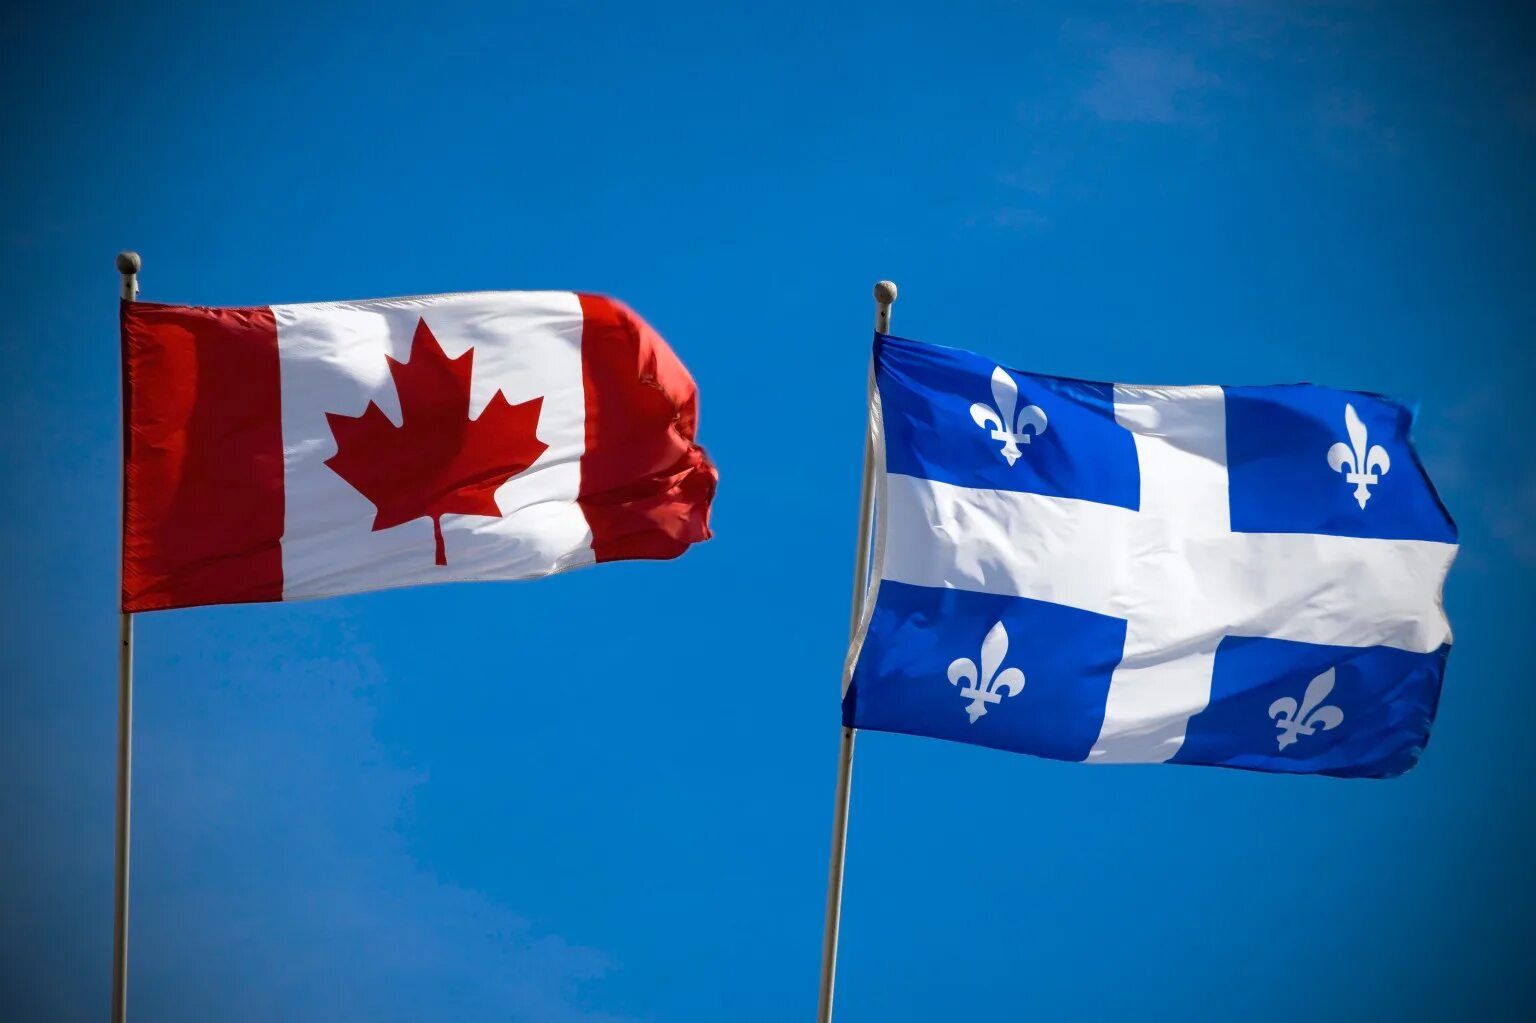 French canada. Флаг французского Квебека. Квебек Канада флаг. Французский Квебек в Канаде. Флаг Quebec Canada.